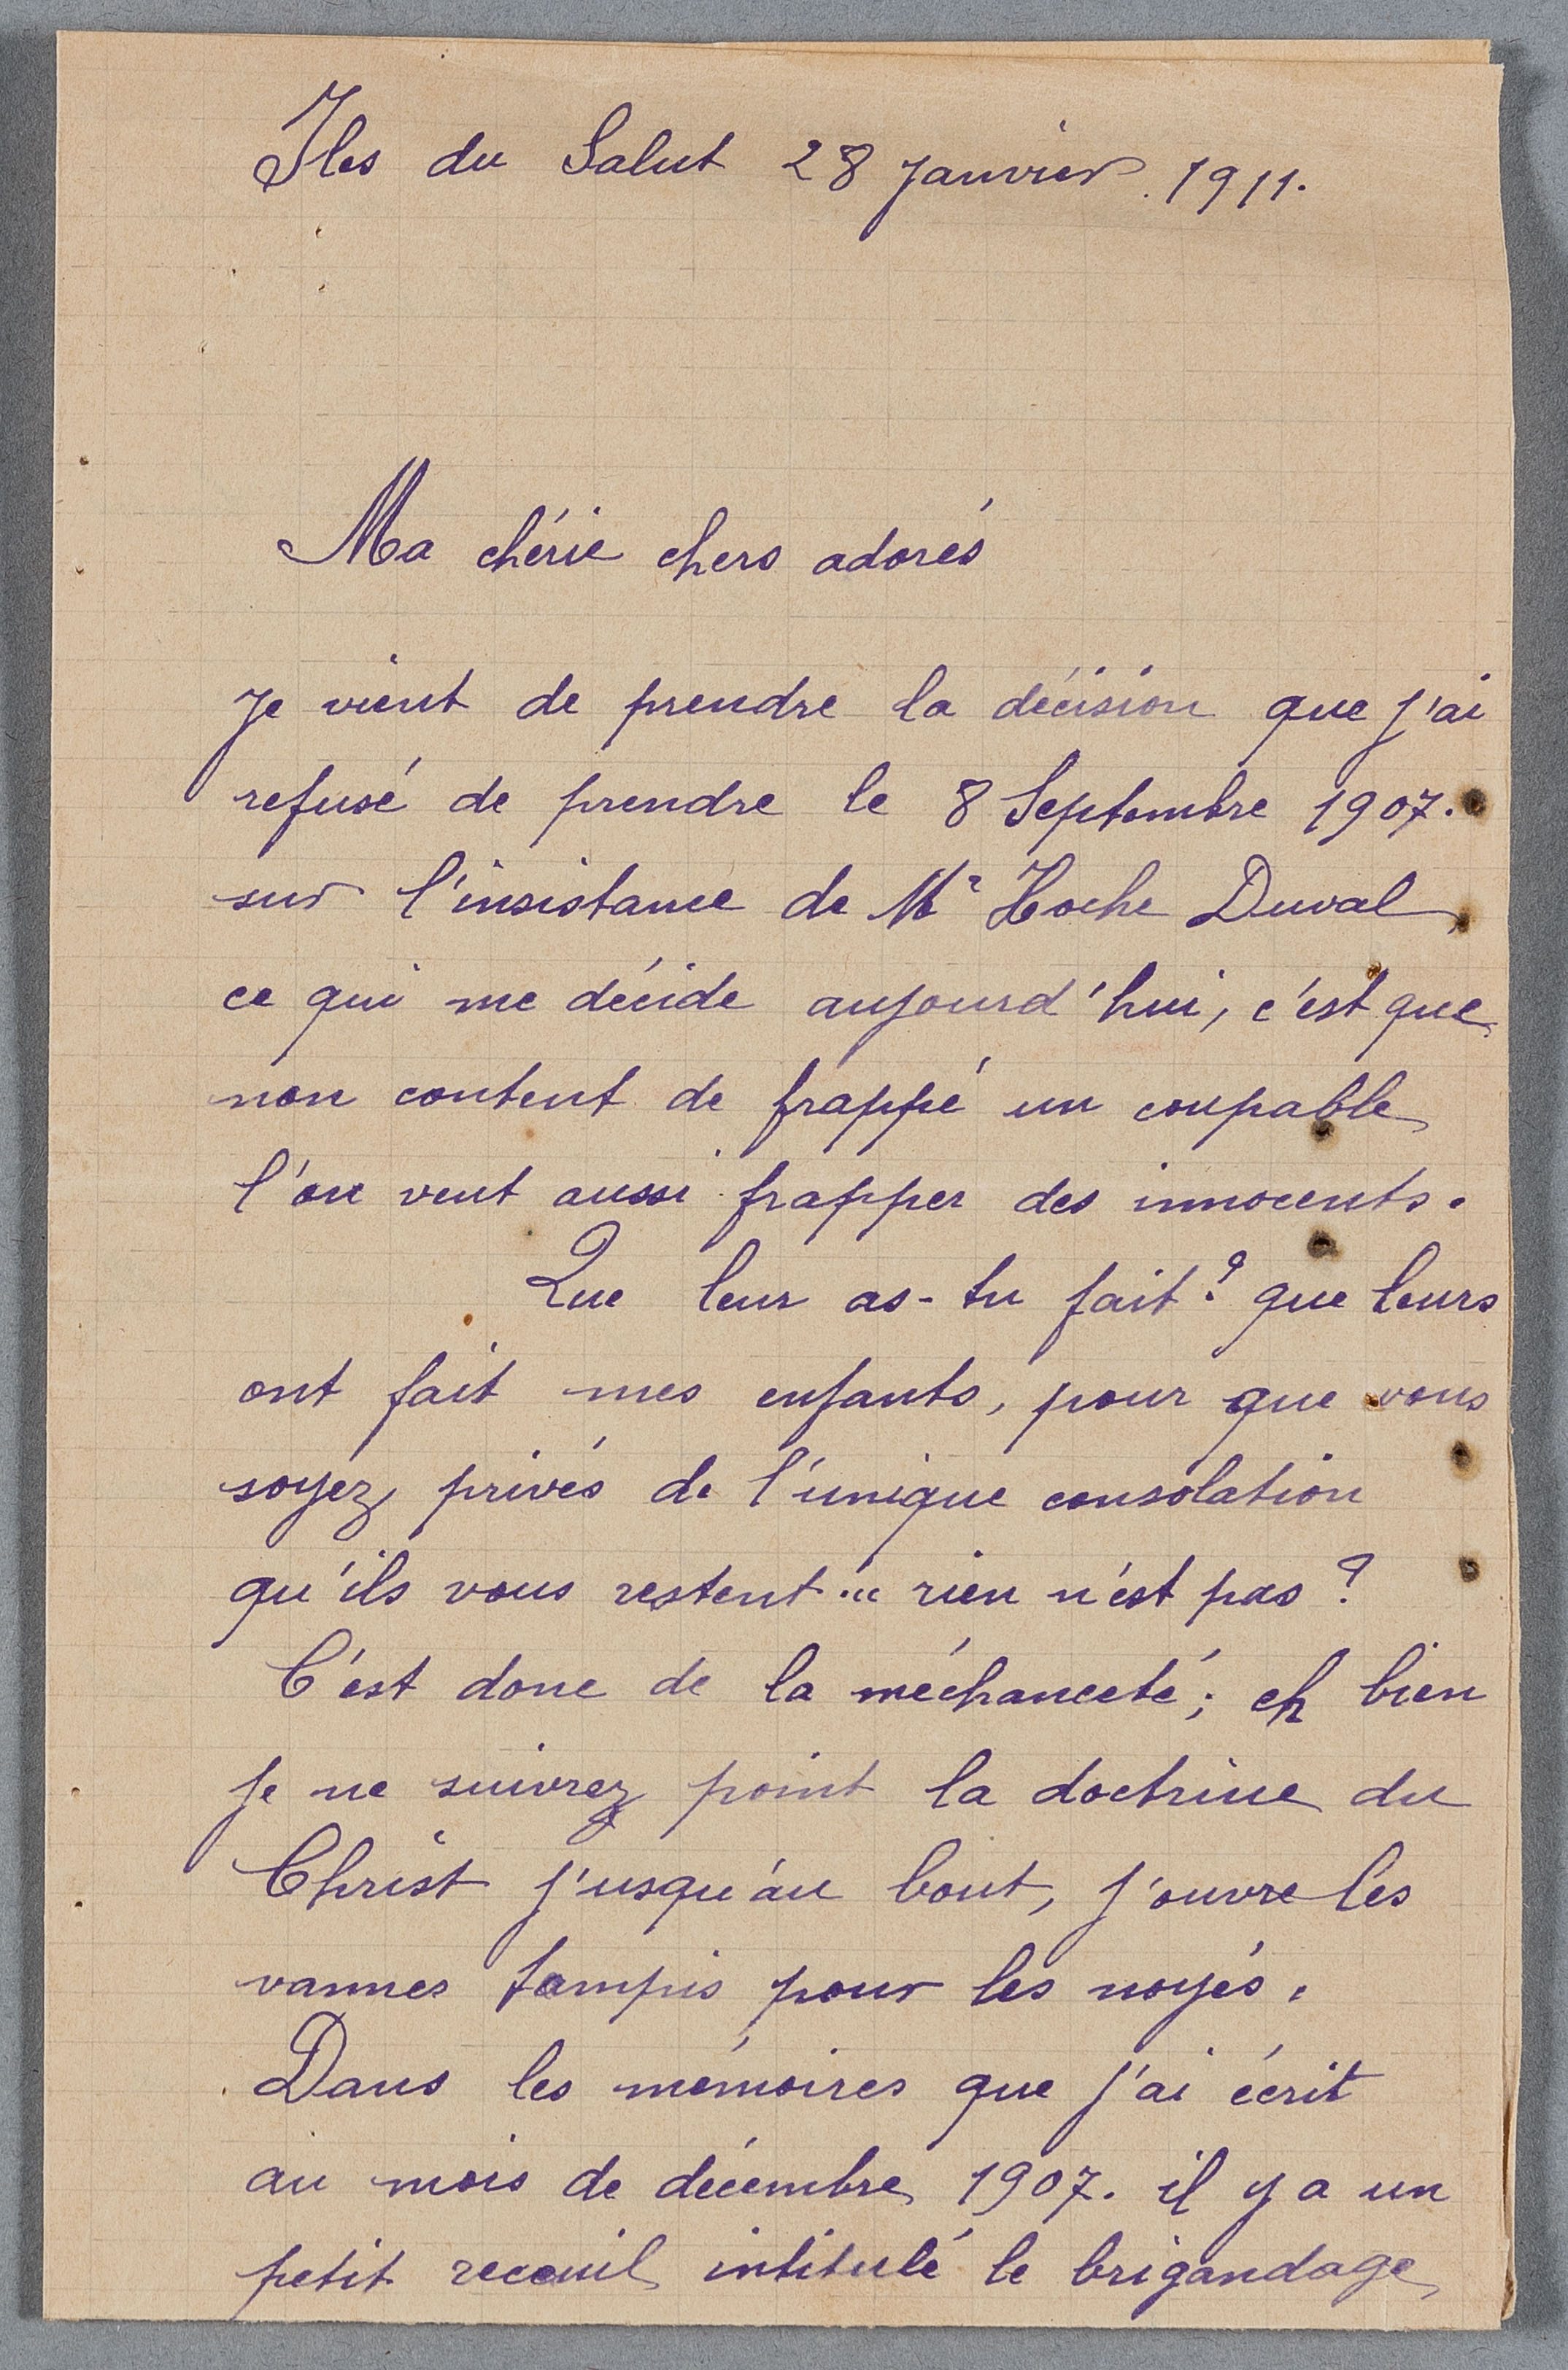 Courrier du bagnard X adressé à sa famille, Iles du Salut, 28 janvier 1911